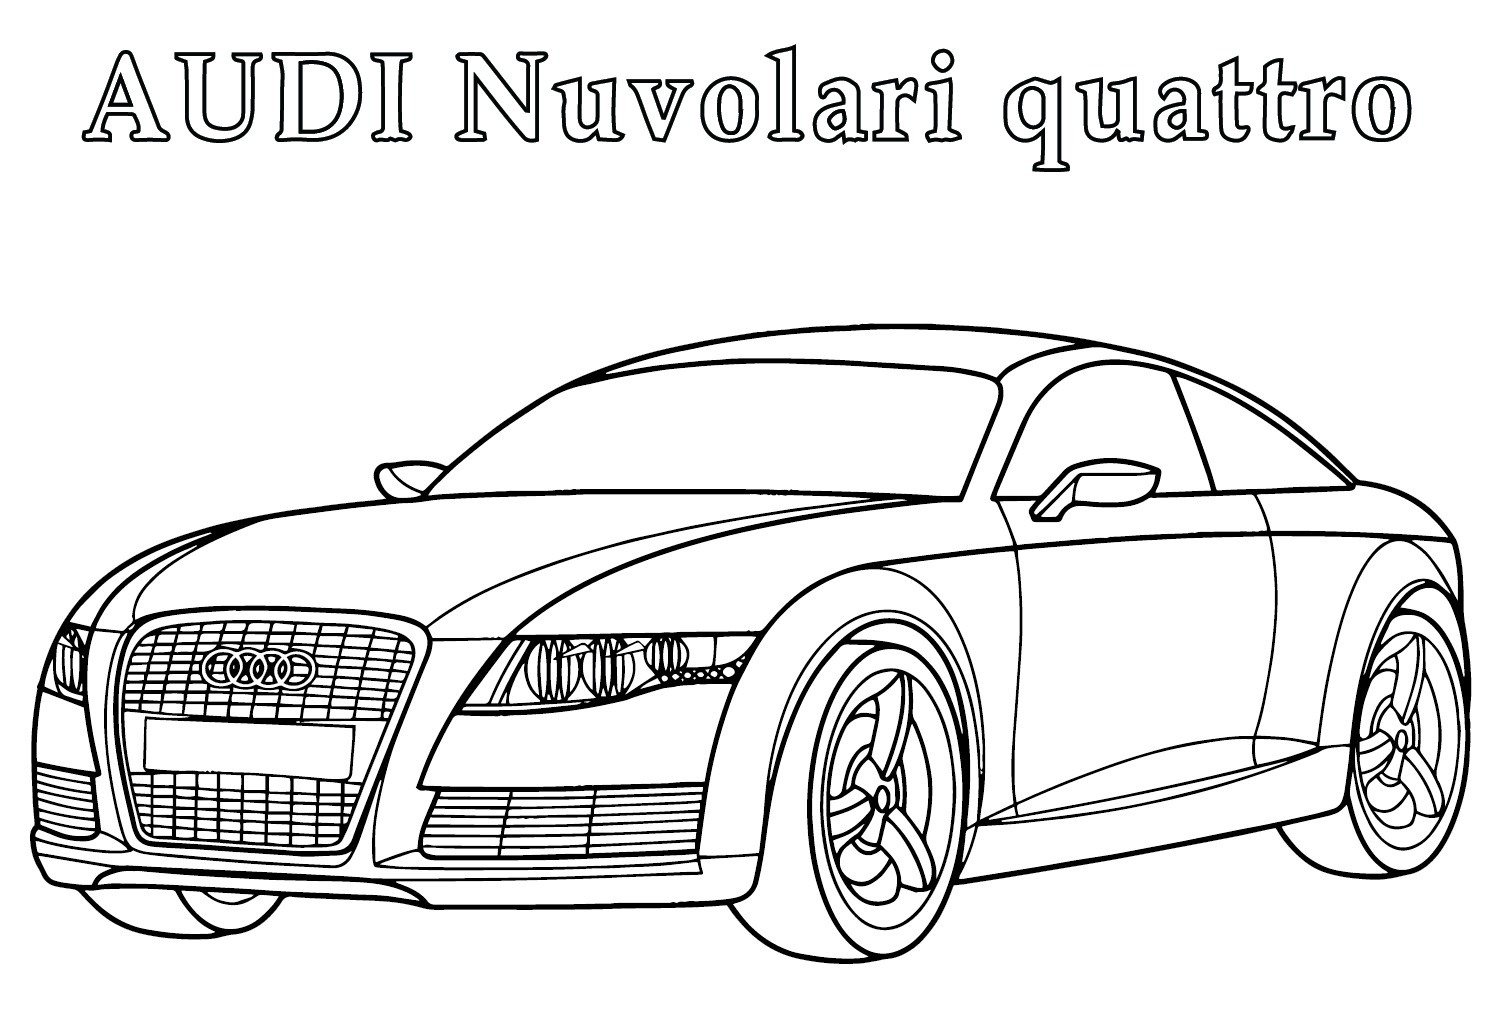 Раскраска Audi Nuvolari Quattro от Audi